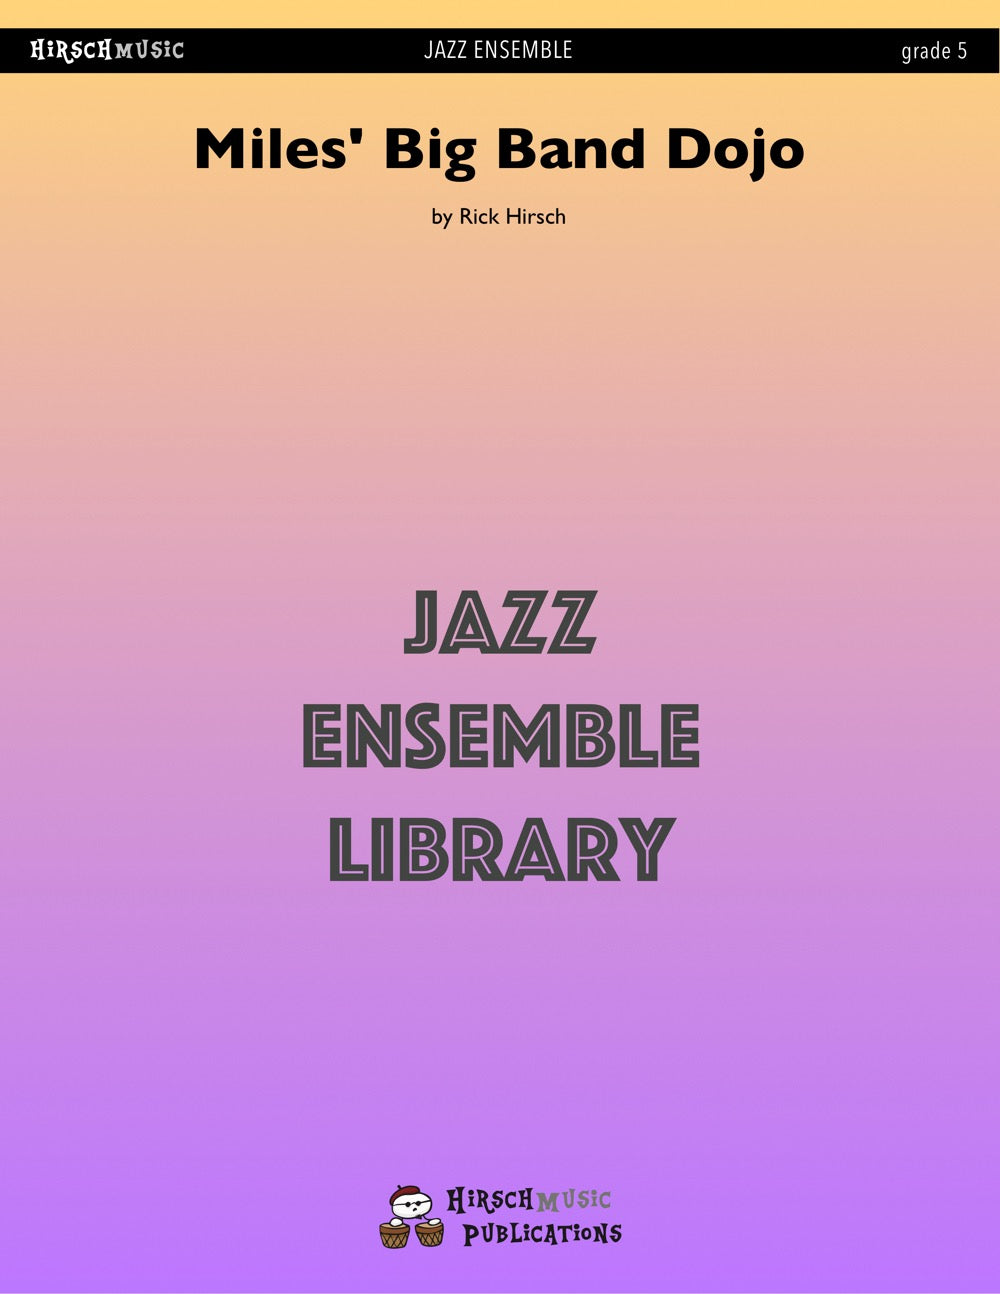 Miles' Big Band Dojo